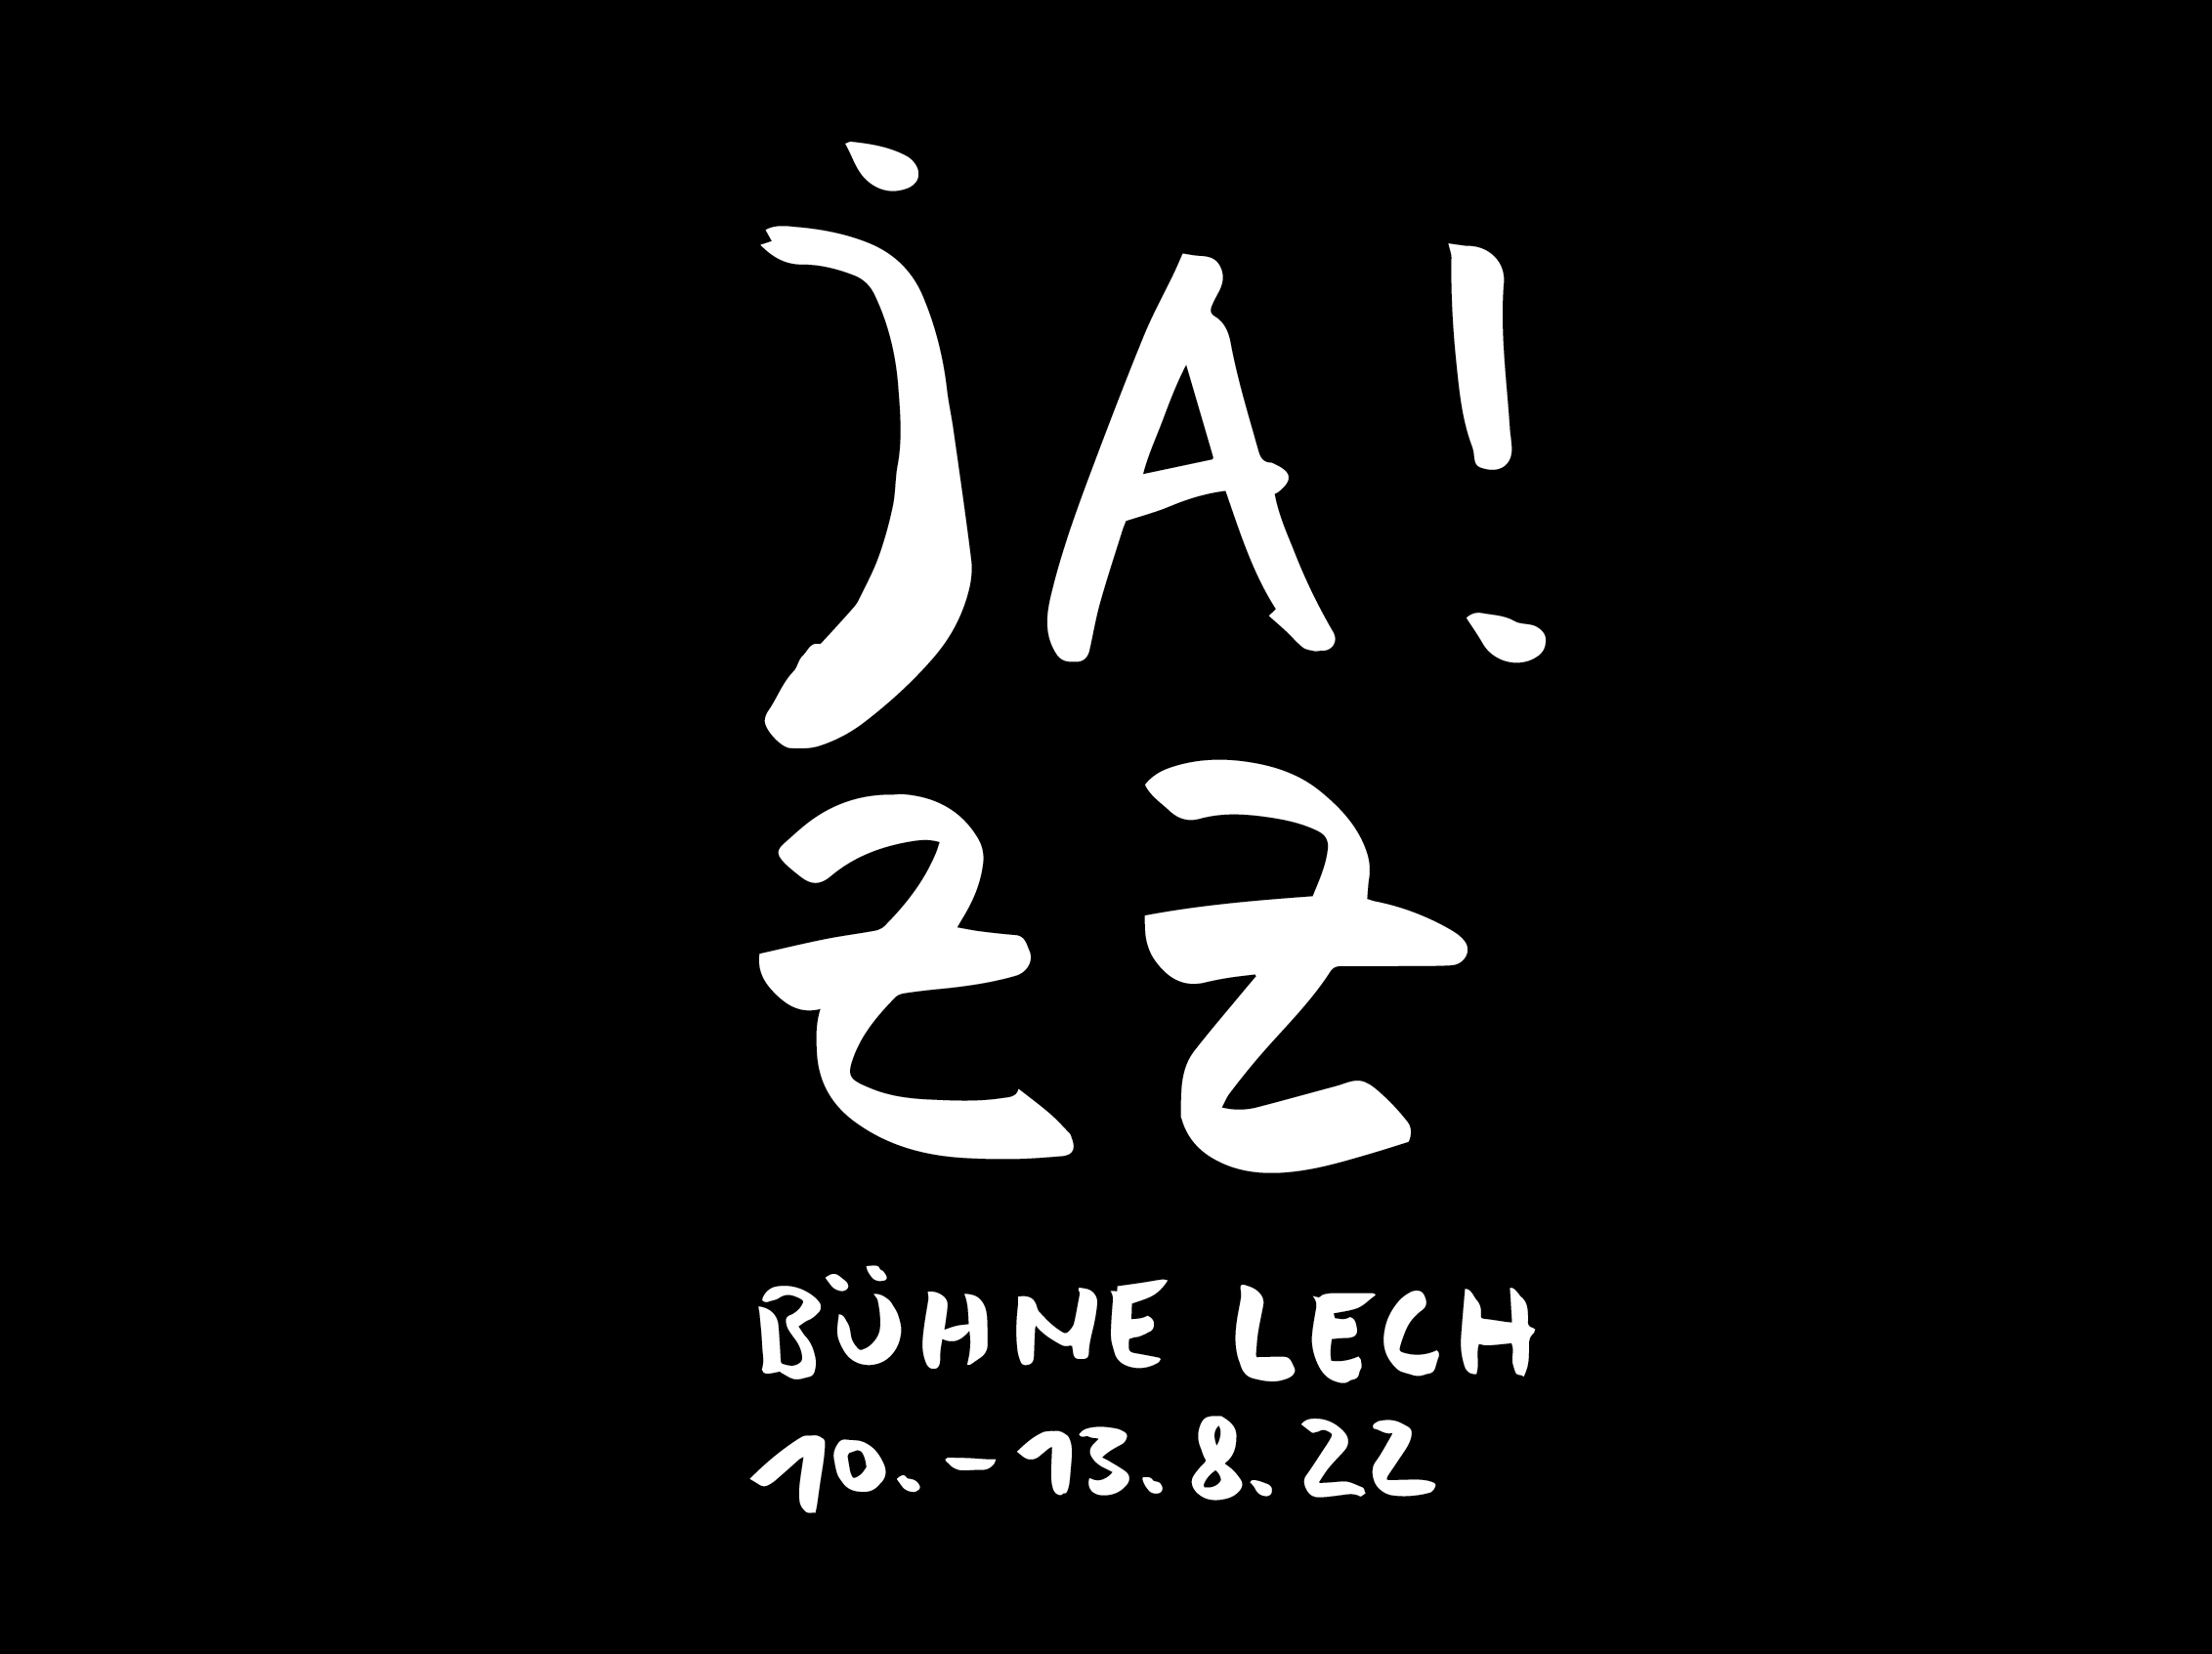 Jazzbuehne Lech